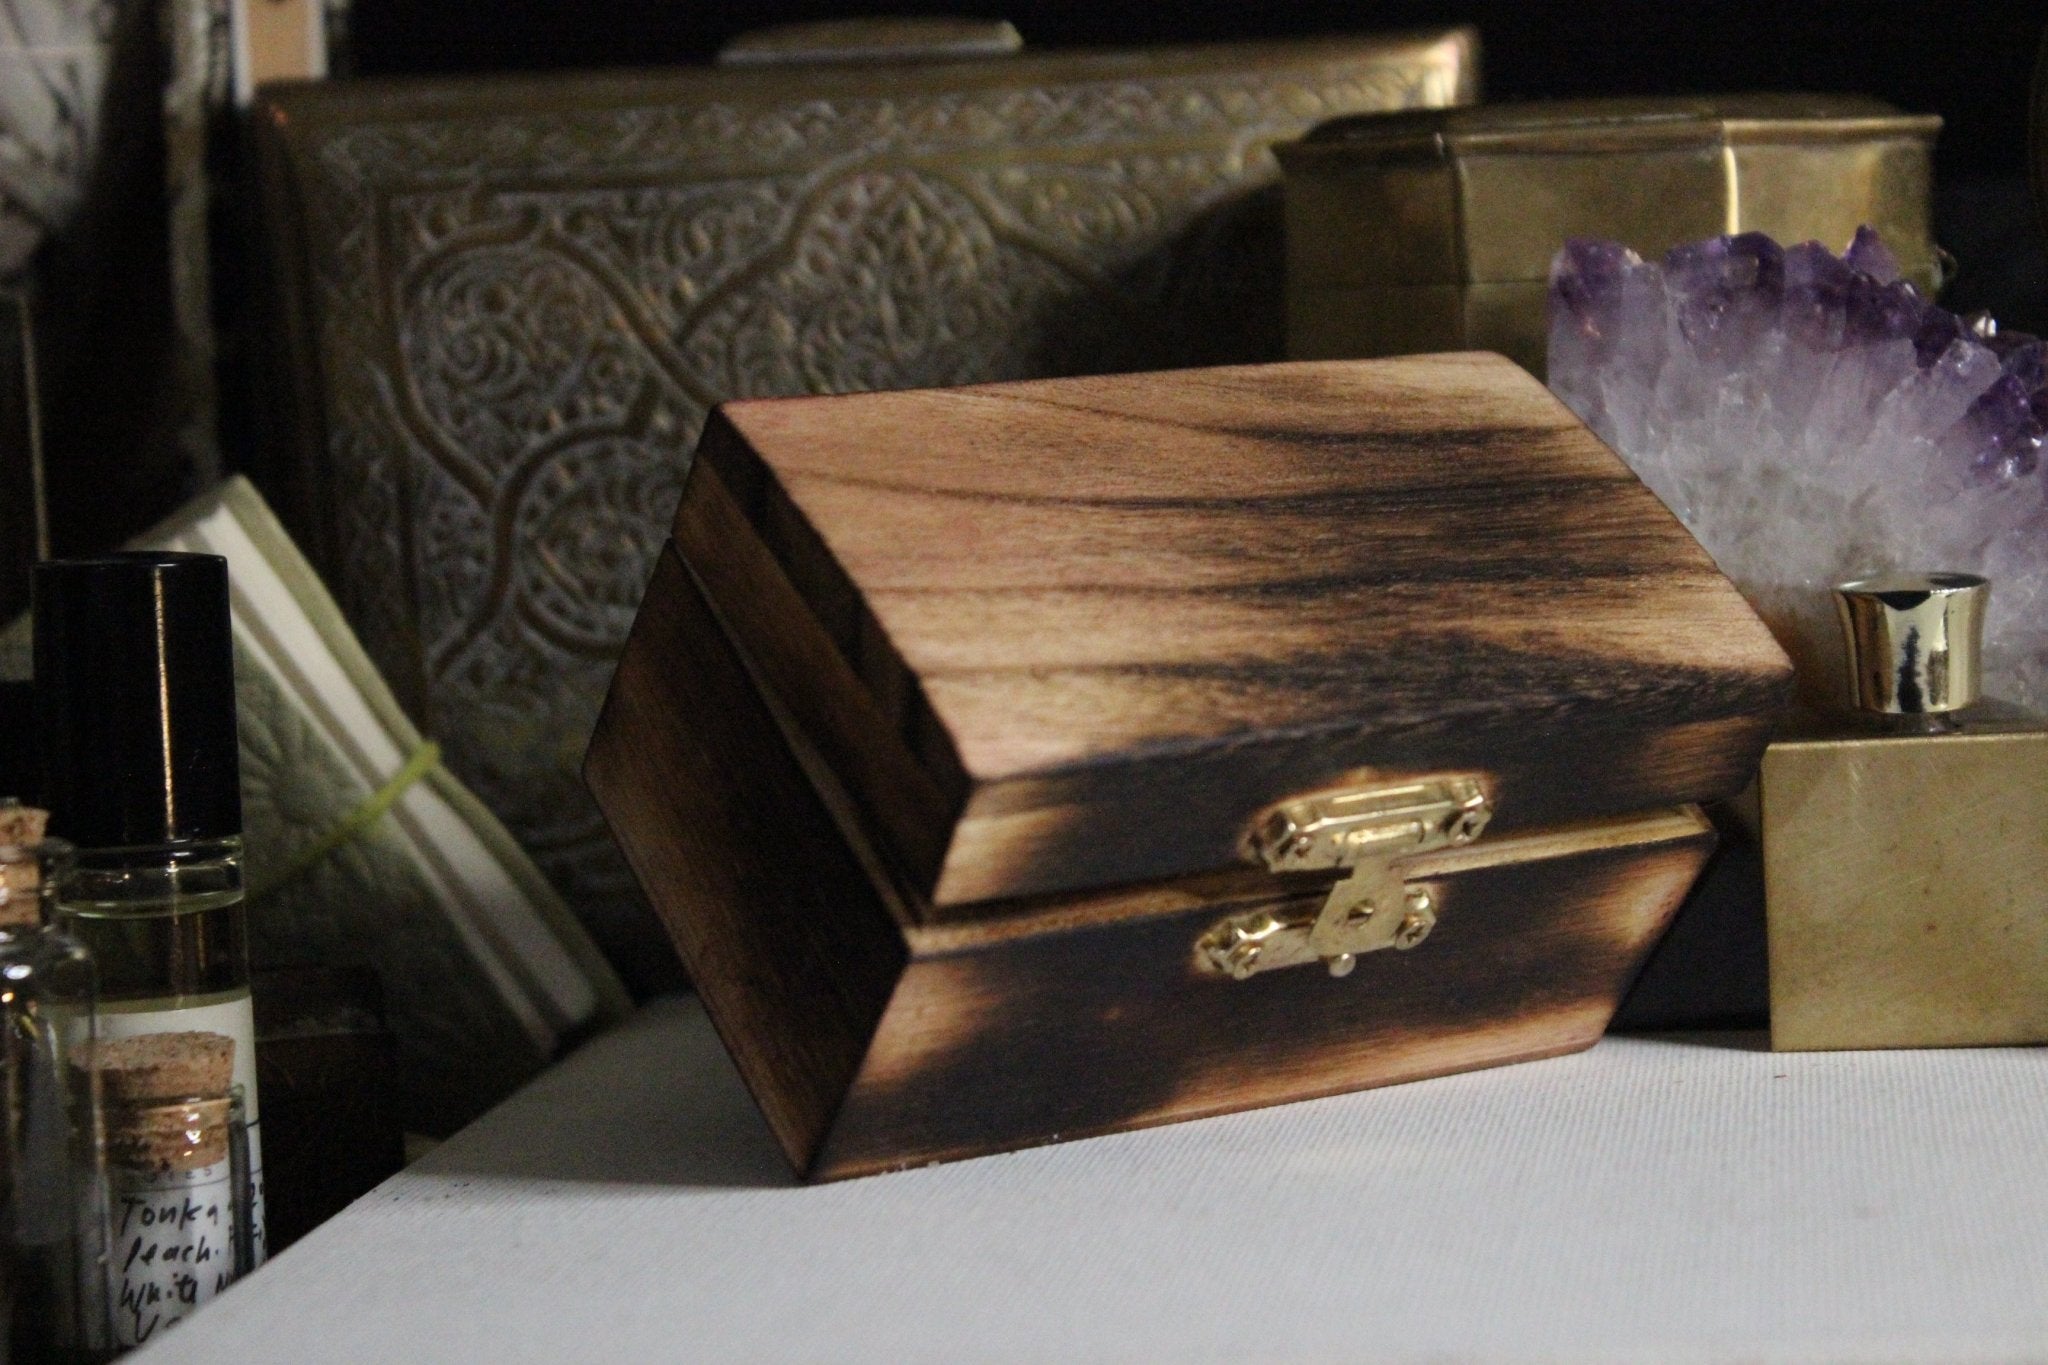 Nile Treasure Box - Golden Treasure Box